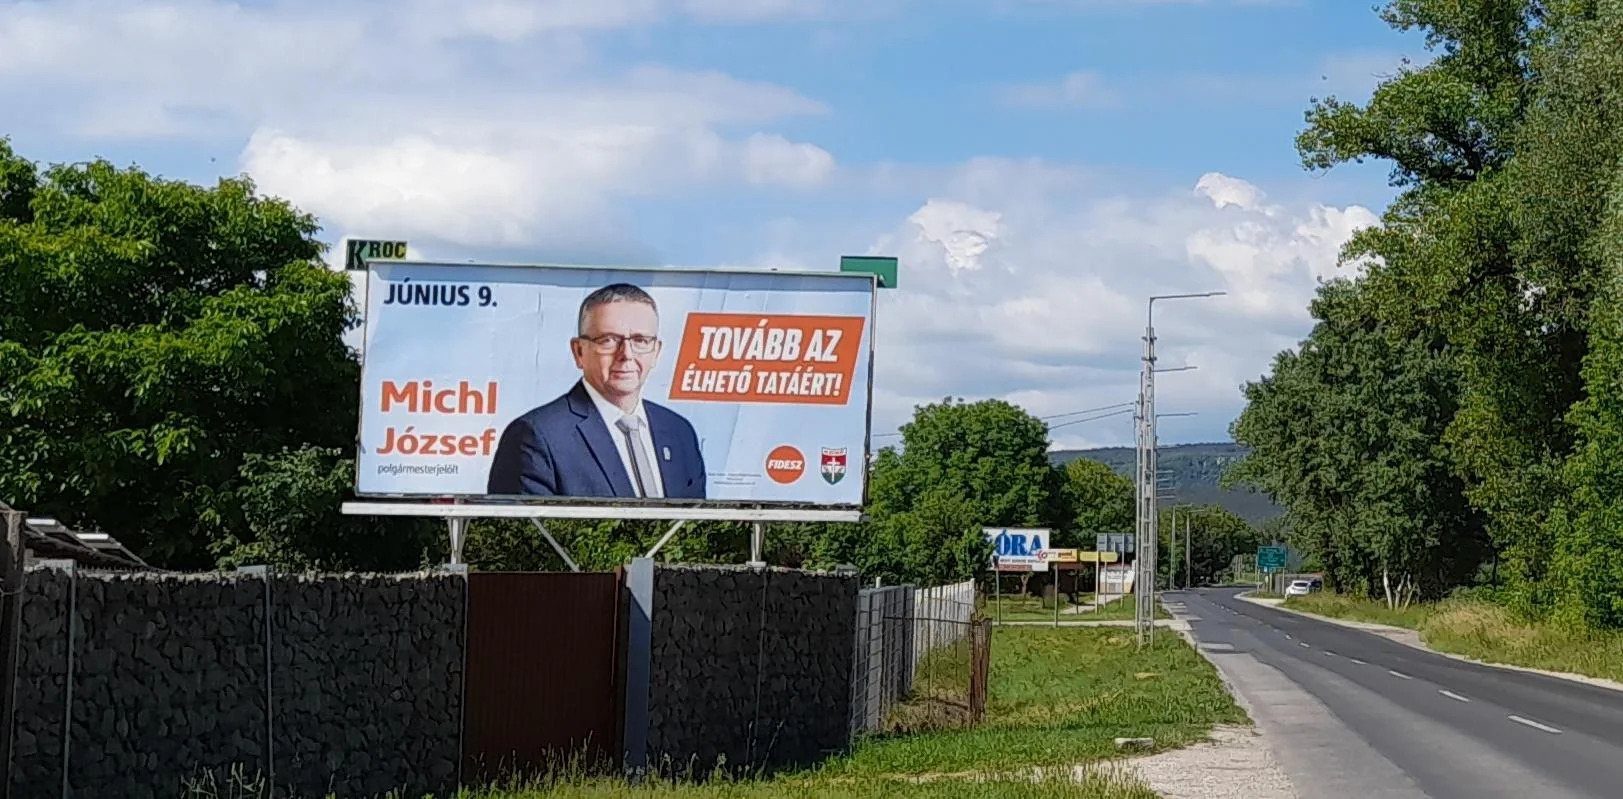 Baki: élhető Tatát ígér a fideszes polgármester – csakhogy egy másik településen